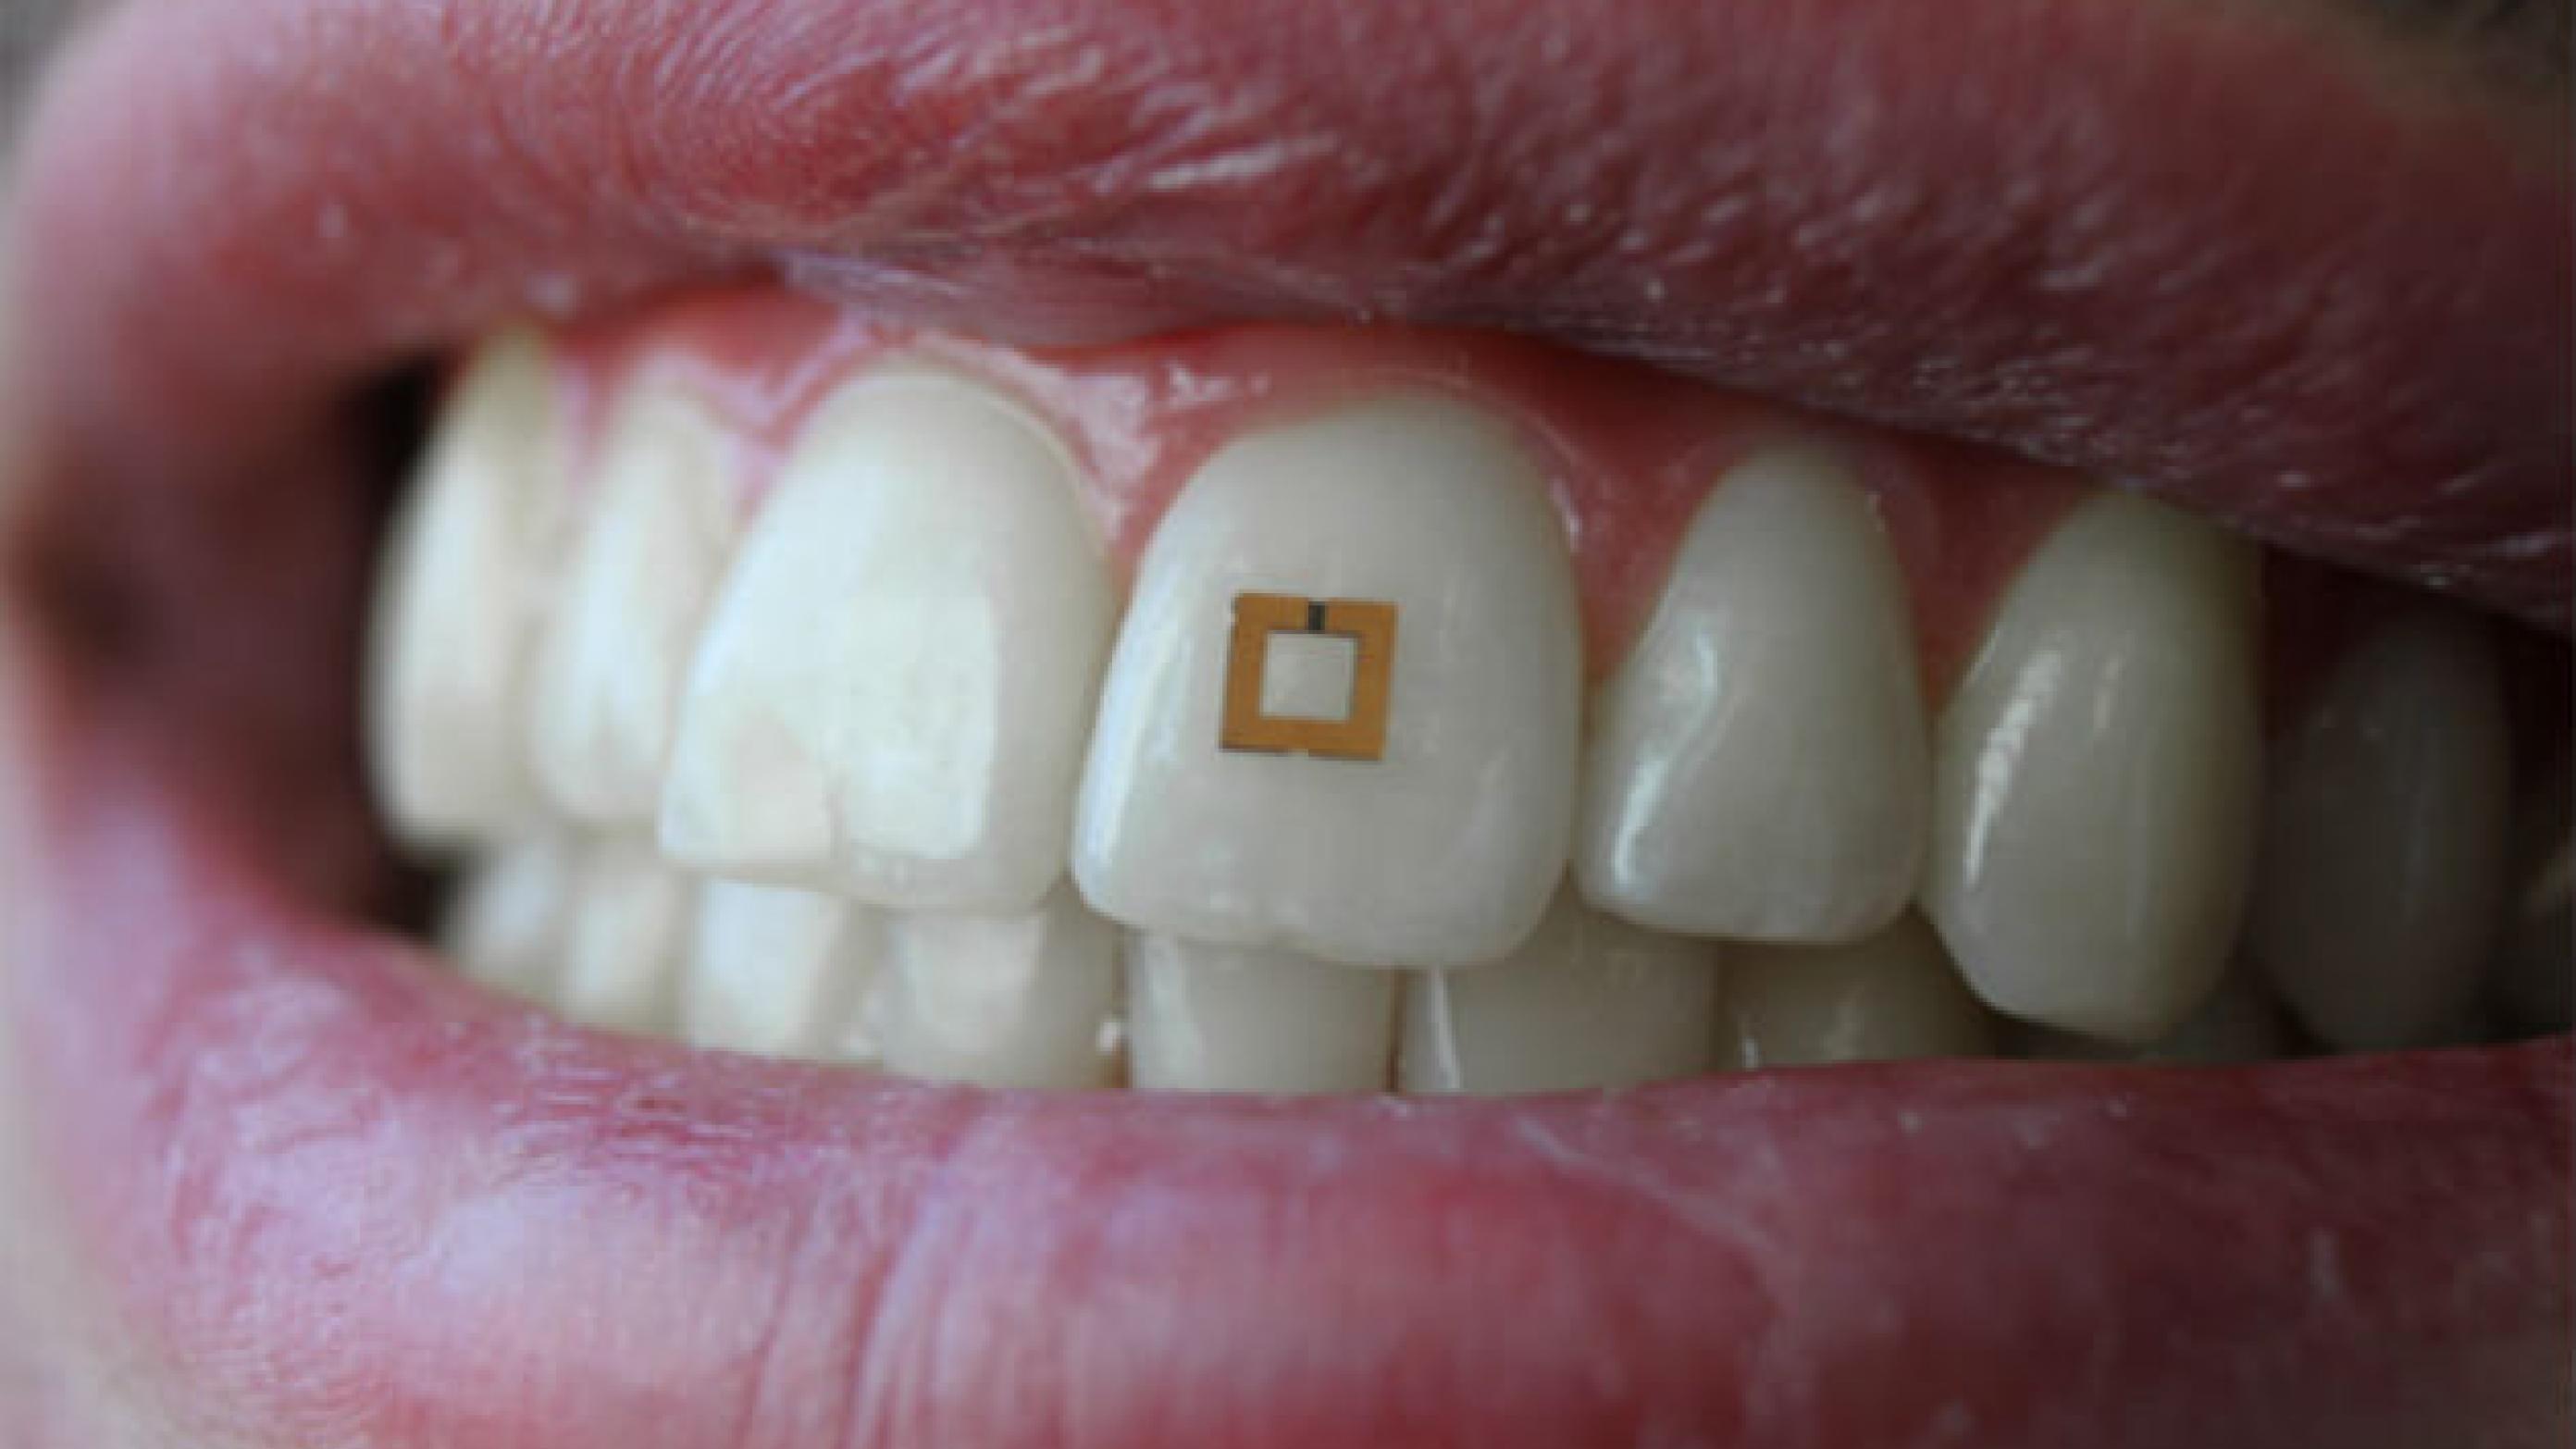 Amerikanske forskere fra Tufts University er ved at udvikle sensorer, som kan sidde på tænderne og sladre om, hvad vi spiser og drikker – og om sundhedstilstanden i munden. Foto: SilkLab/Tufts University